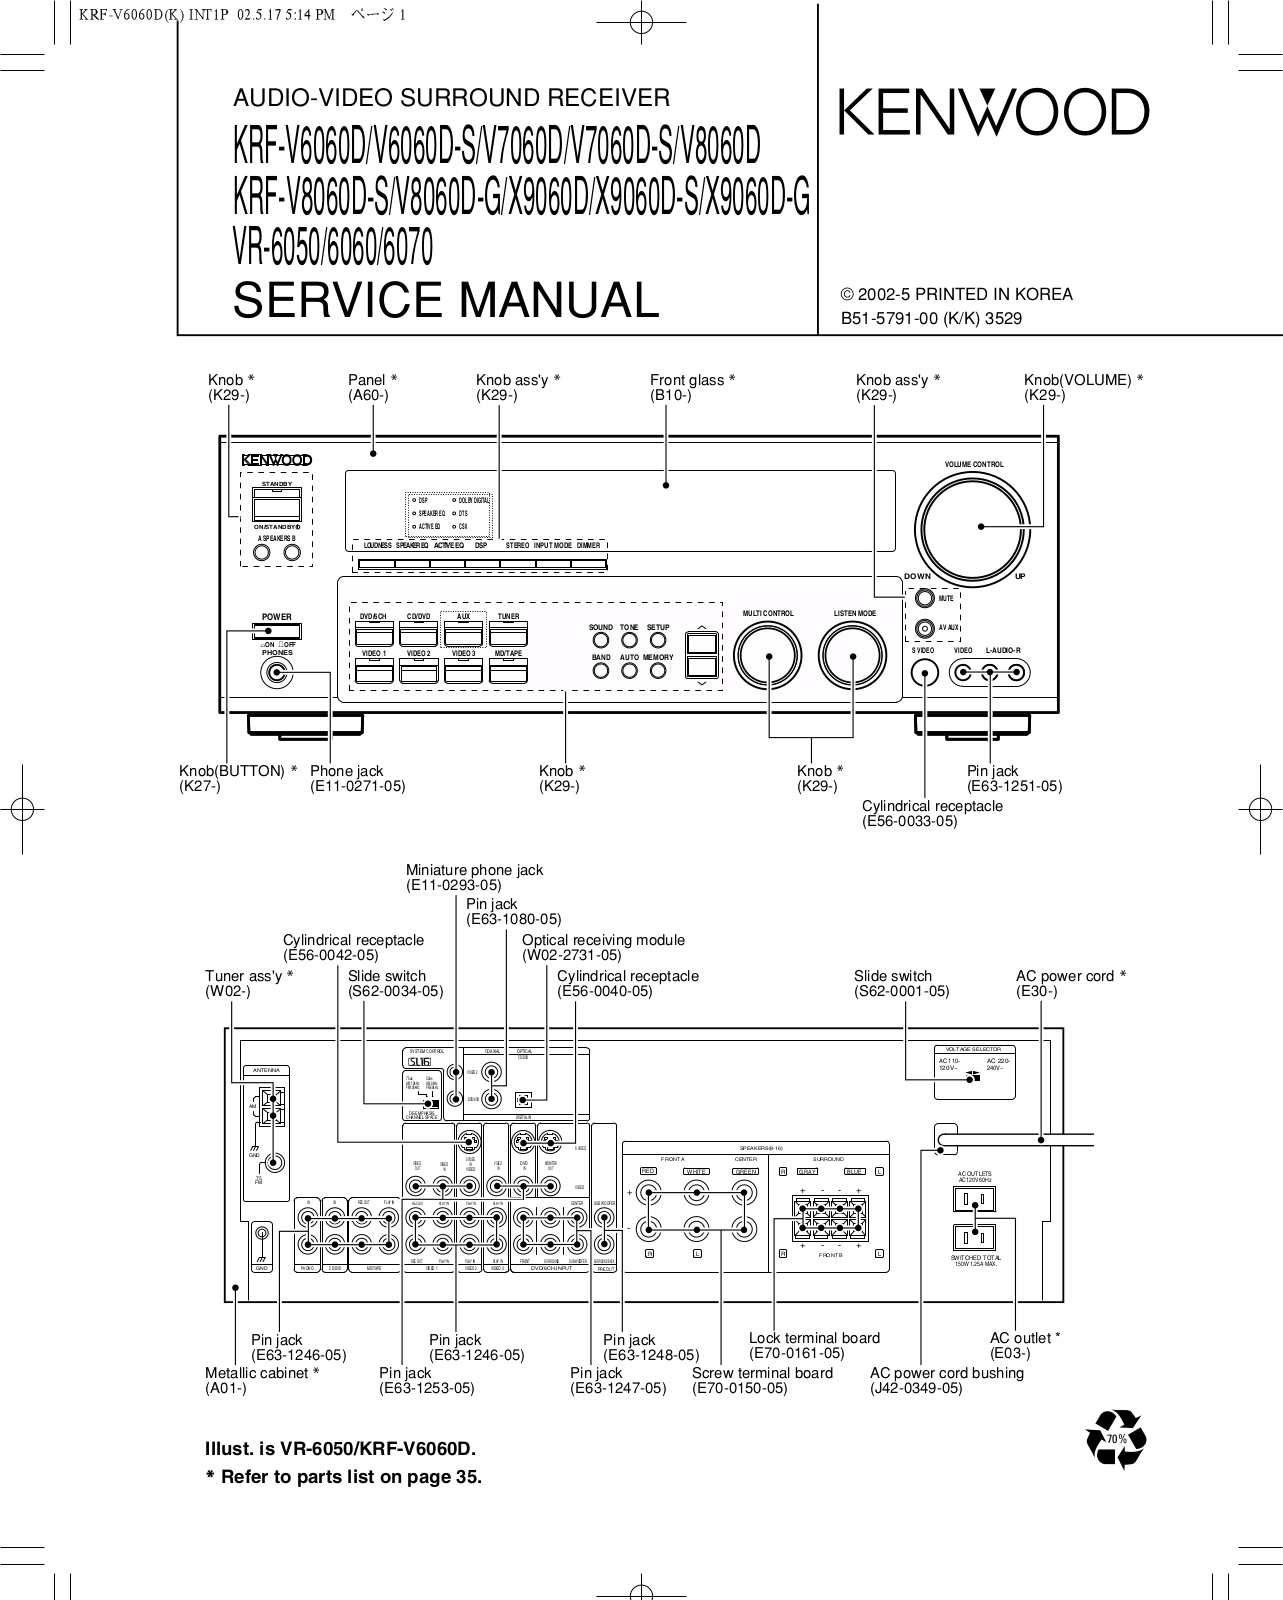 Kenwood KRF-V6060D-S, KRF-V7060D-S, KRF-V8060D-S, KRF-V8060D-G, KRF-X9060D Service Manual